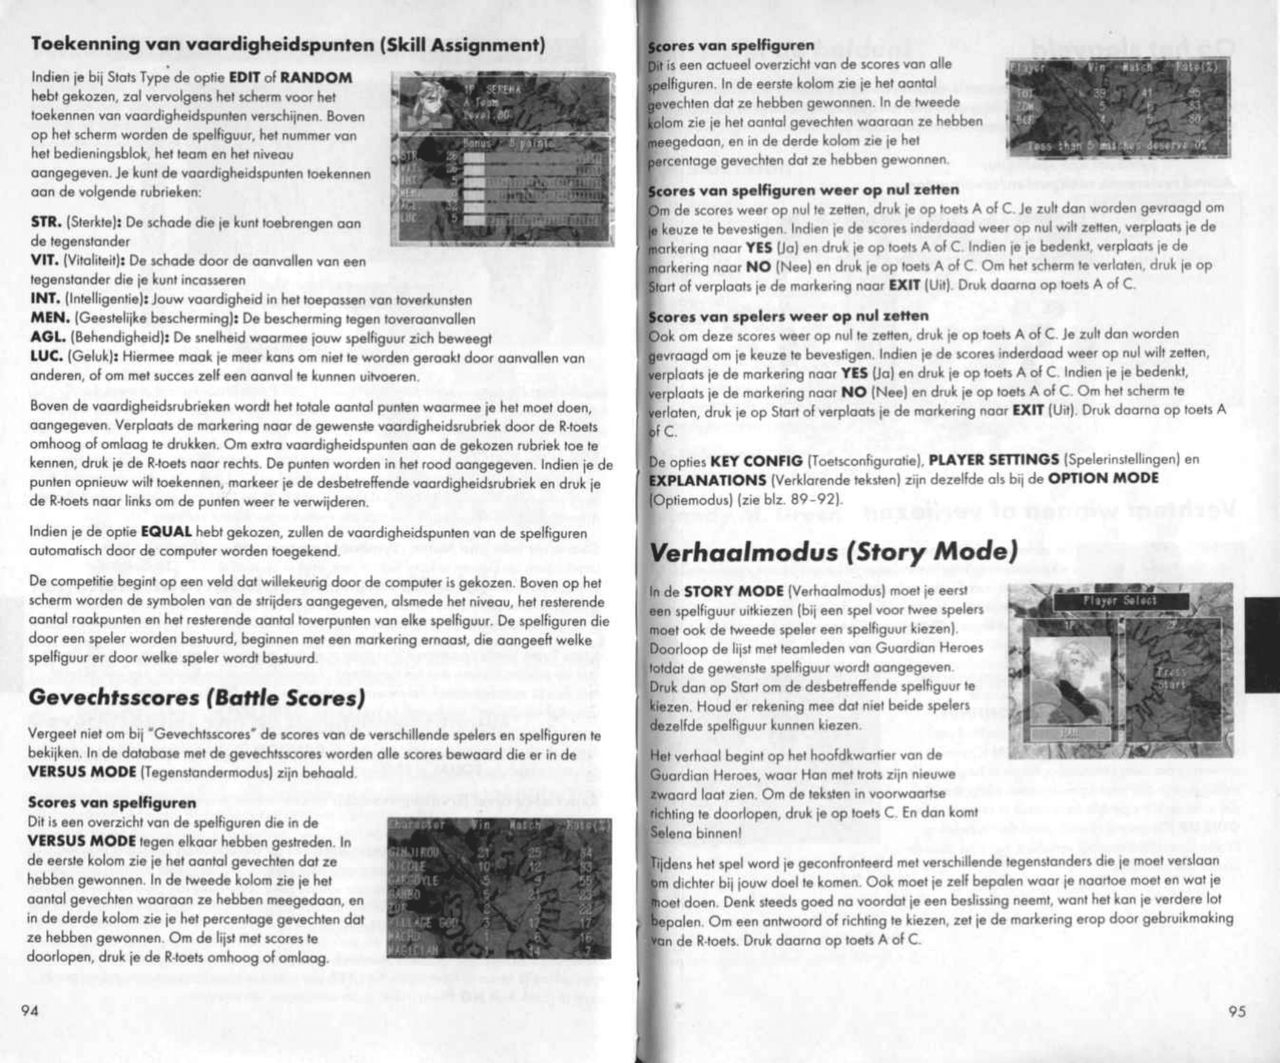 Guardian Heroes (Saturn) Game Manual 48